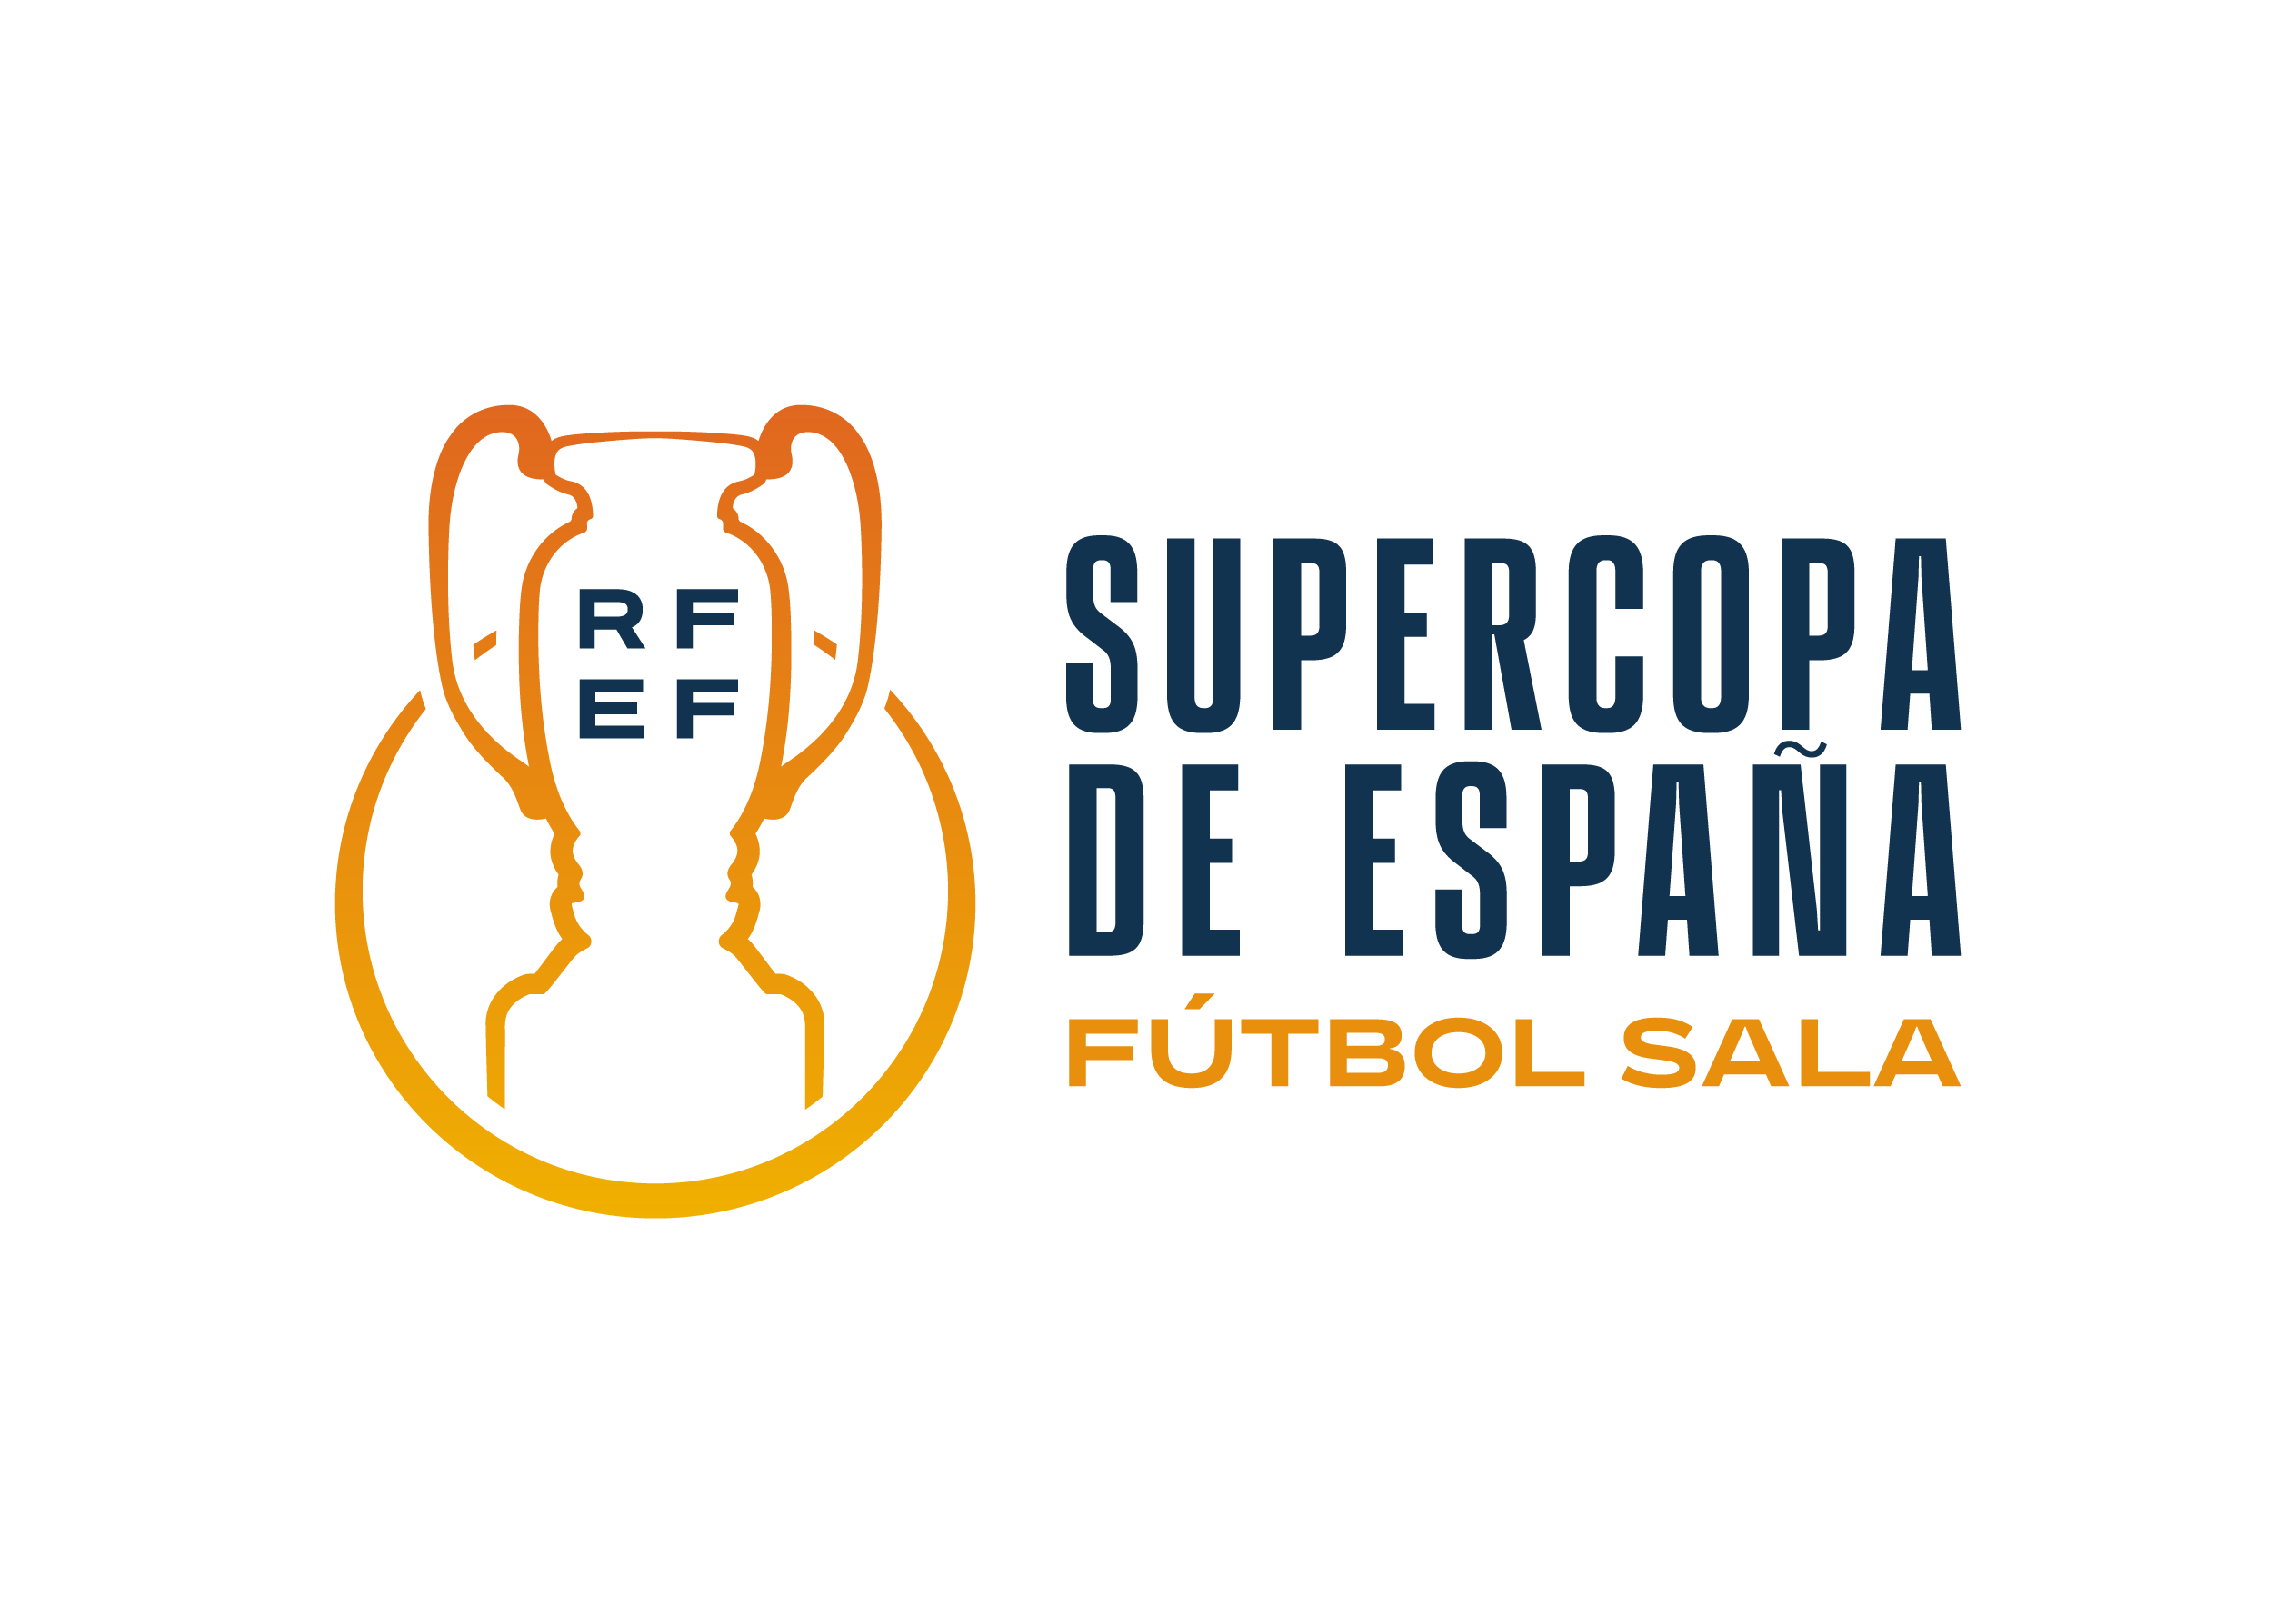 Supercopa de España Futs.